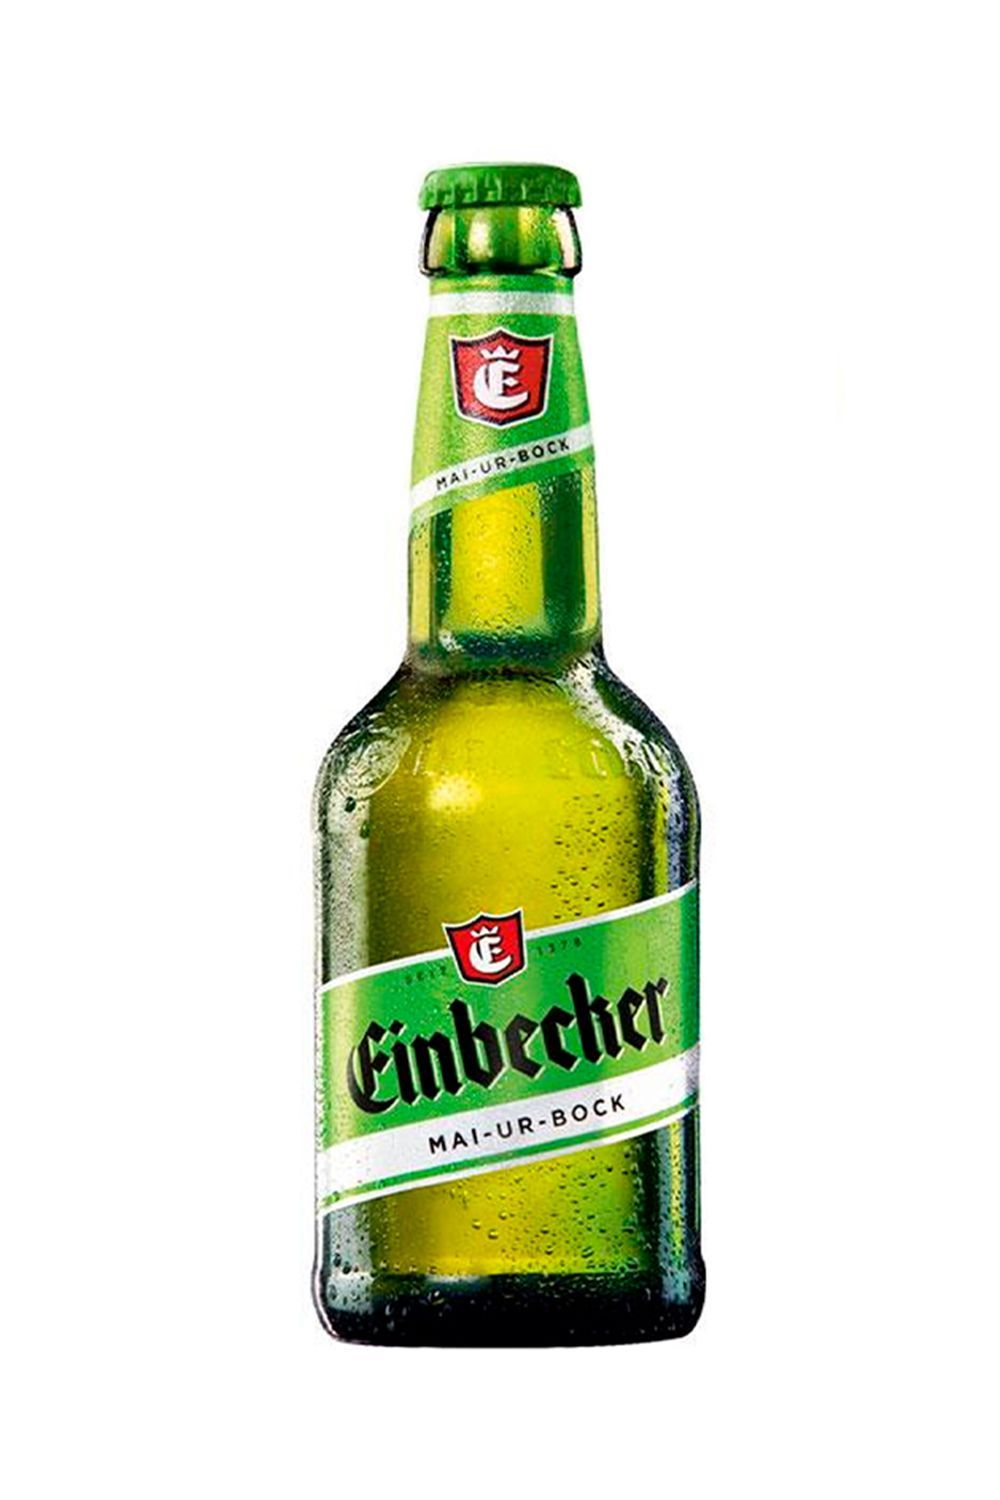 Пиво Айнбекер Май-Ур-Бок 6,5% с/т 0,33л ( Германия)